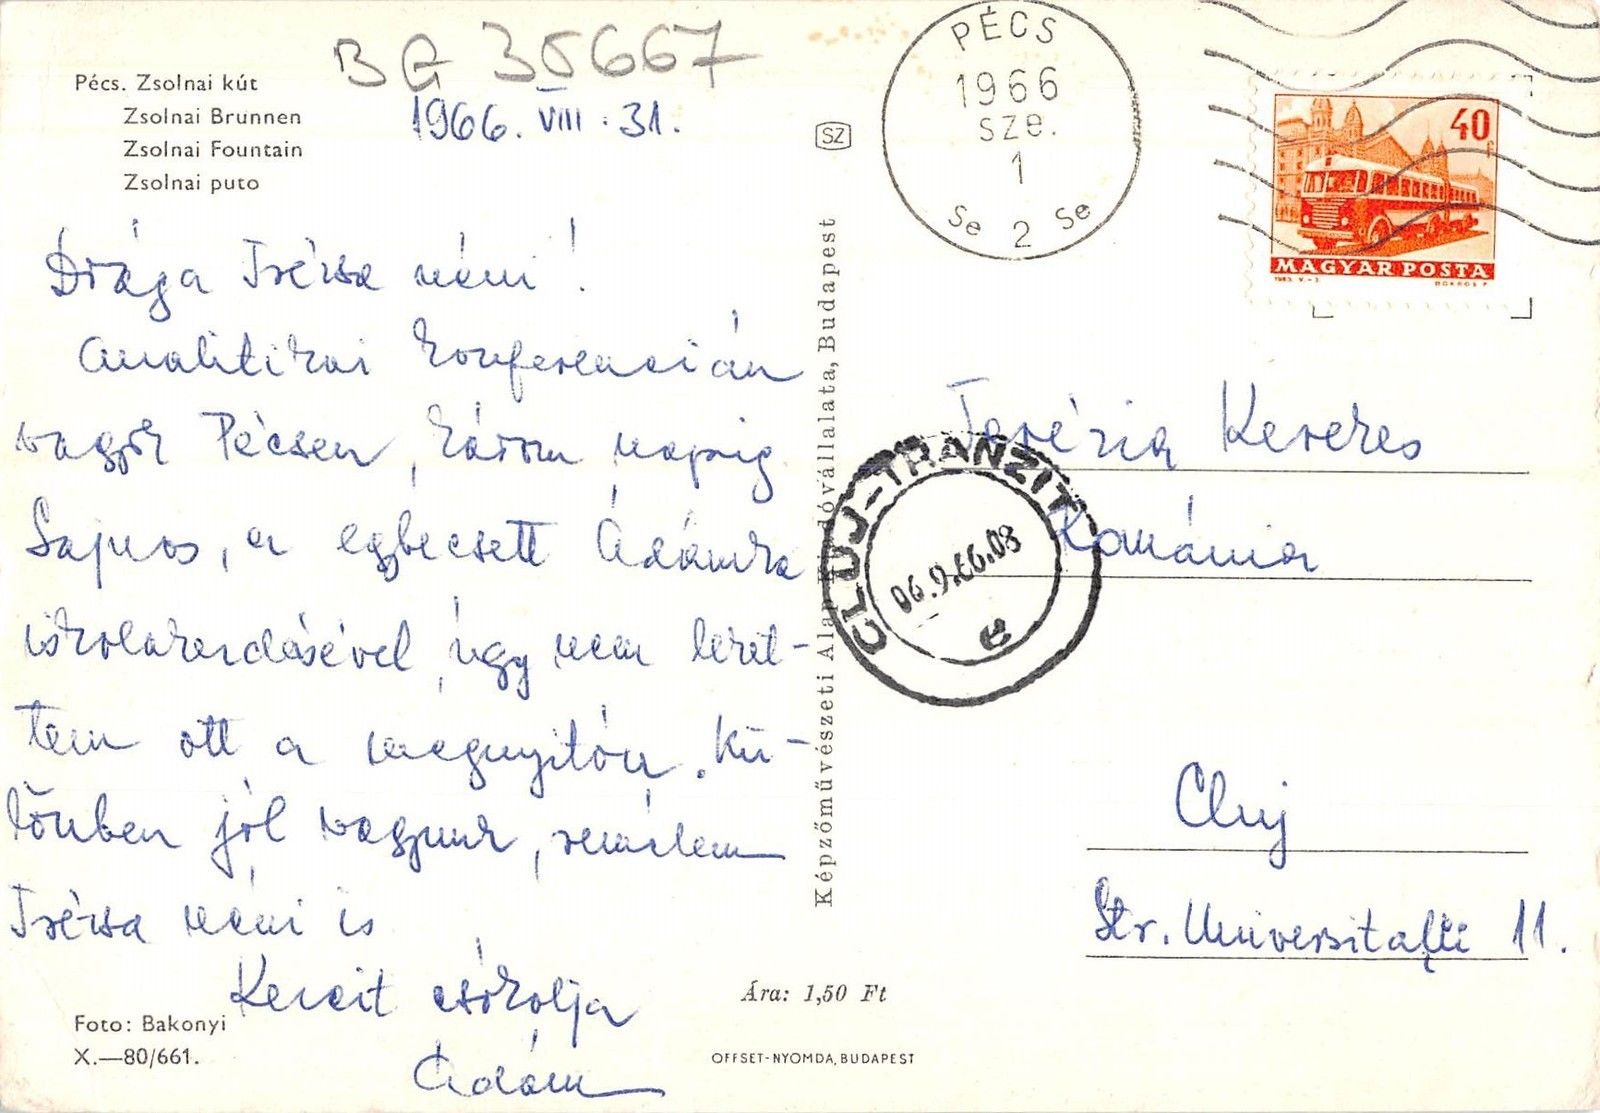 BG35667 pecs zsolnai brunnen hungary | Europe - Hungary, Postcard ...